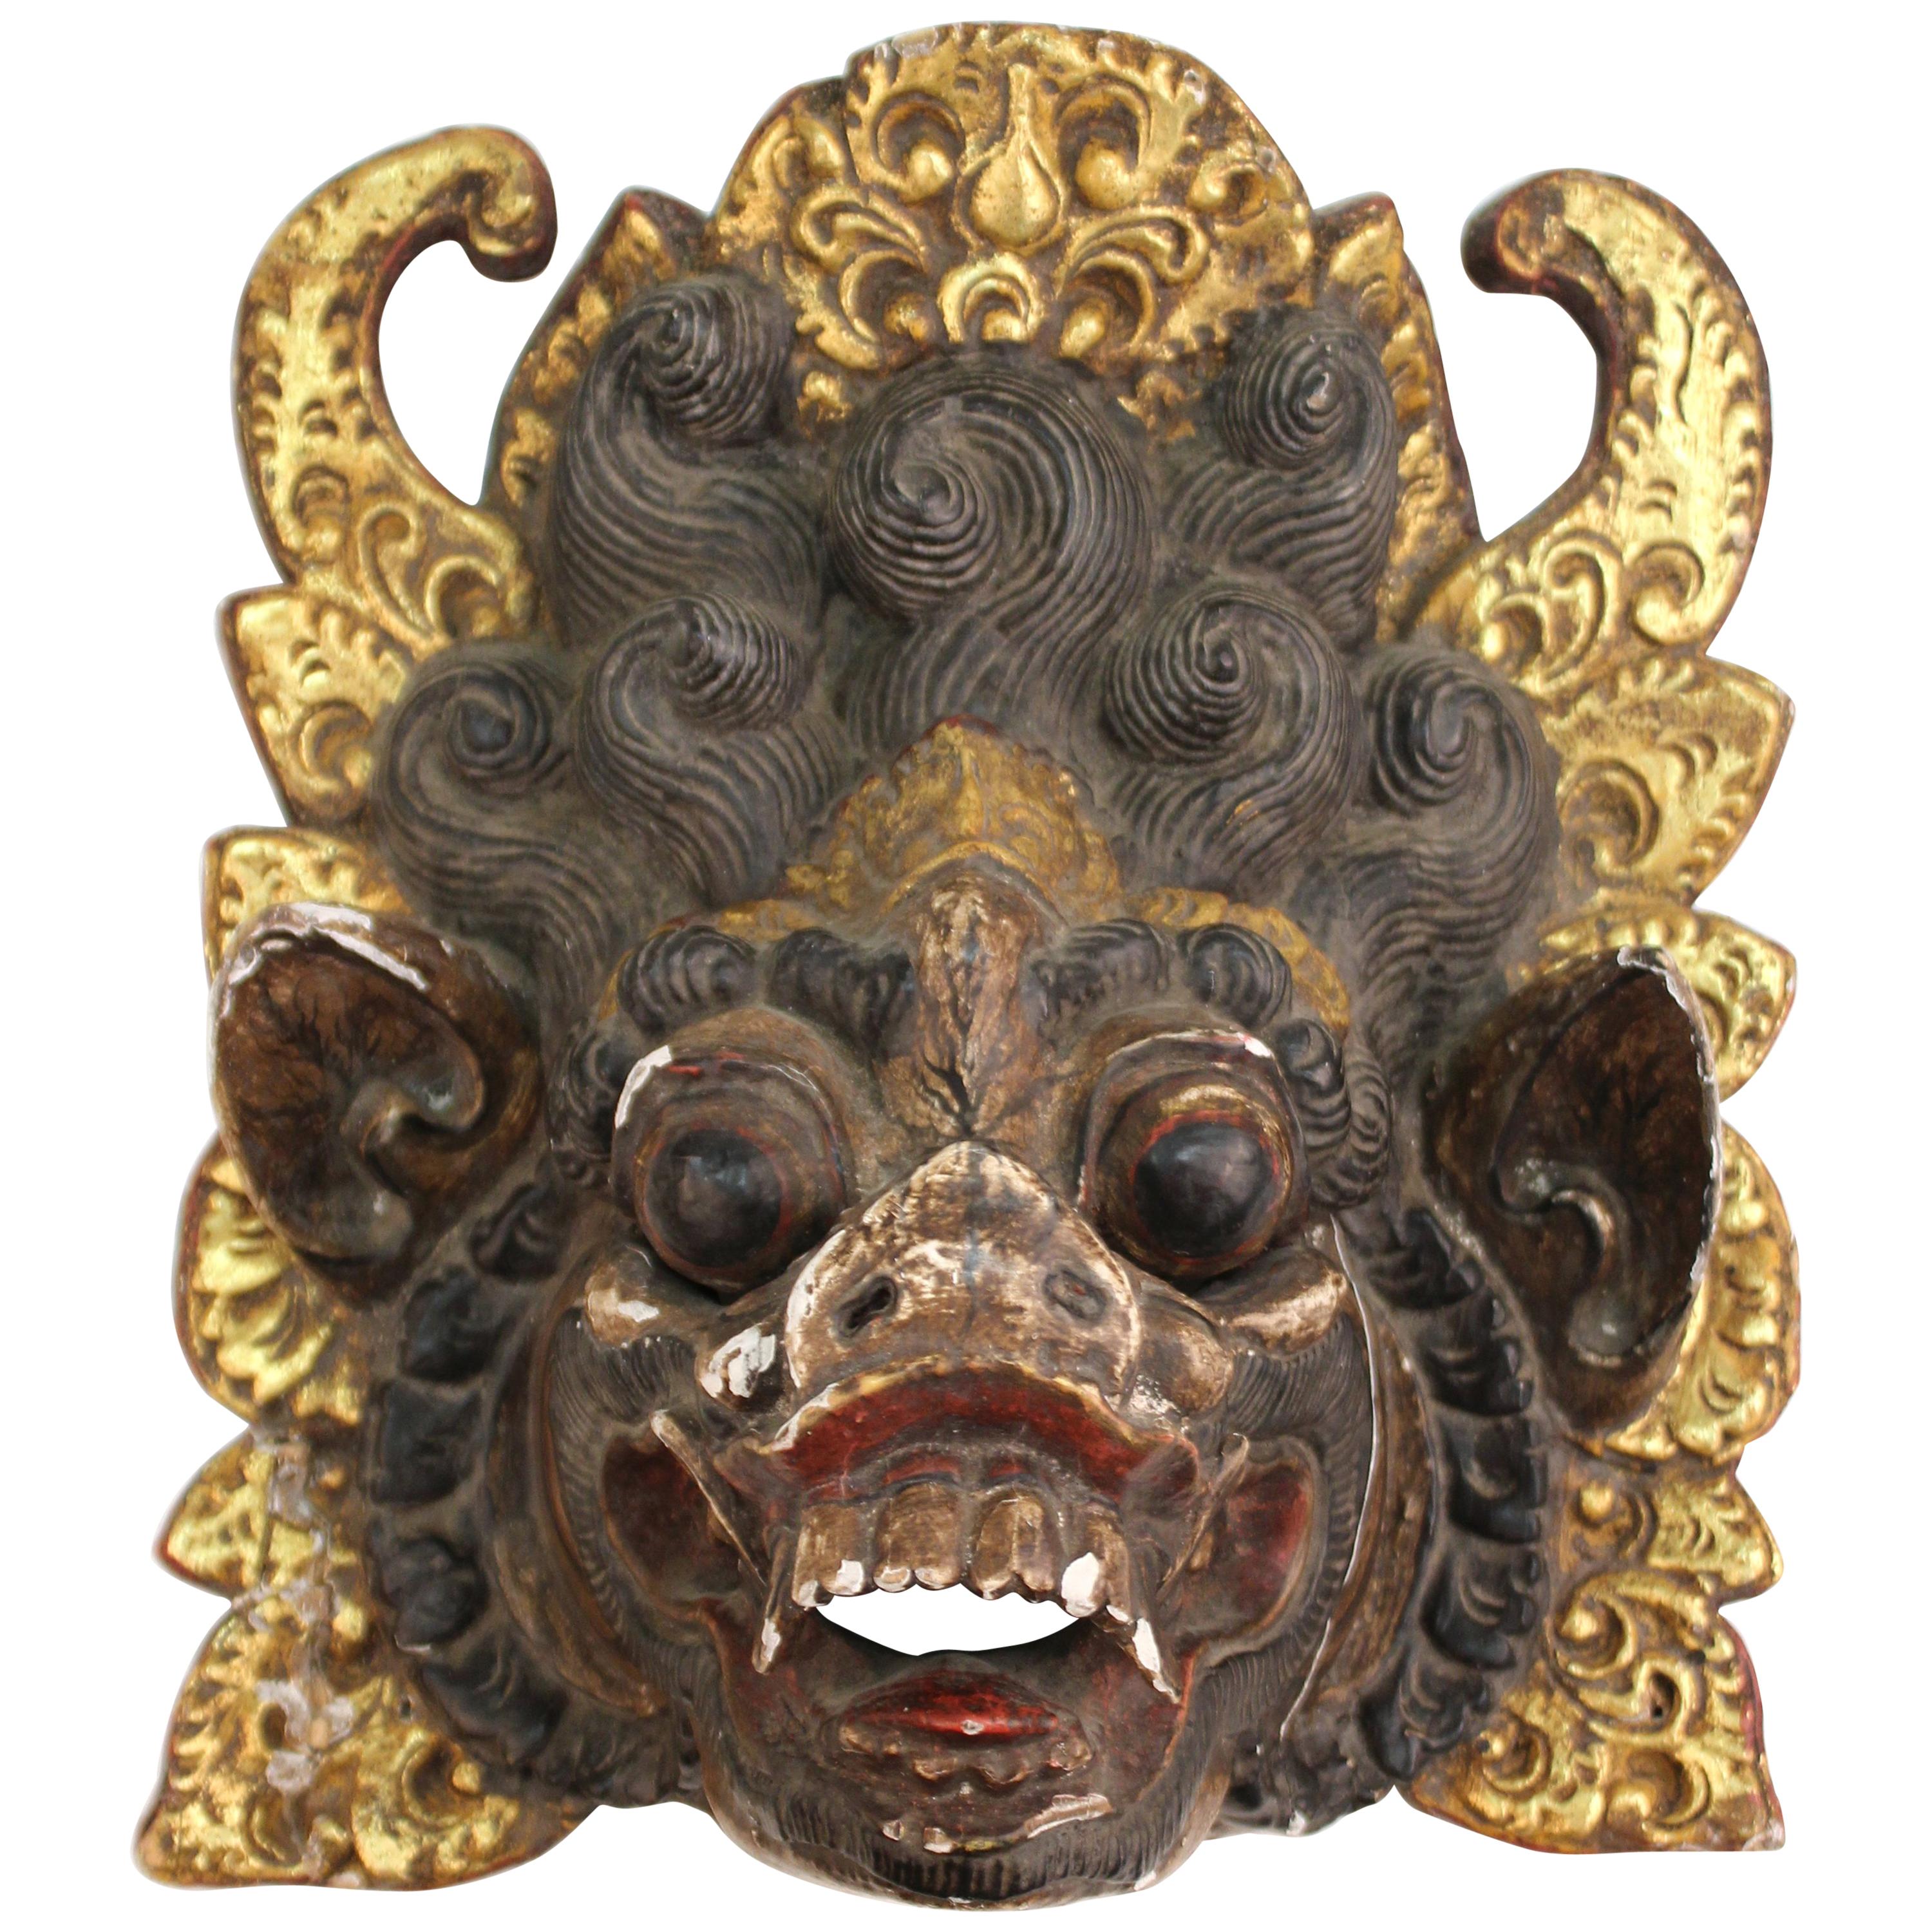 Balinese Barong Wood Dance Mask of Mythological Creature